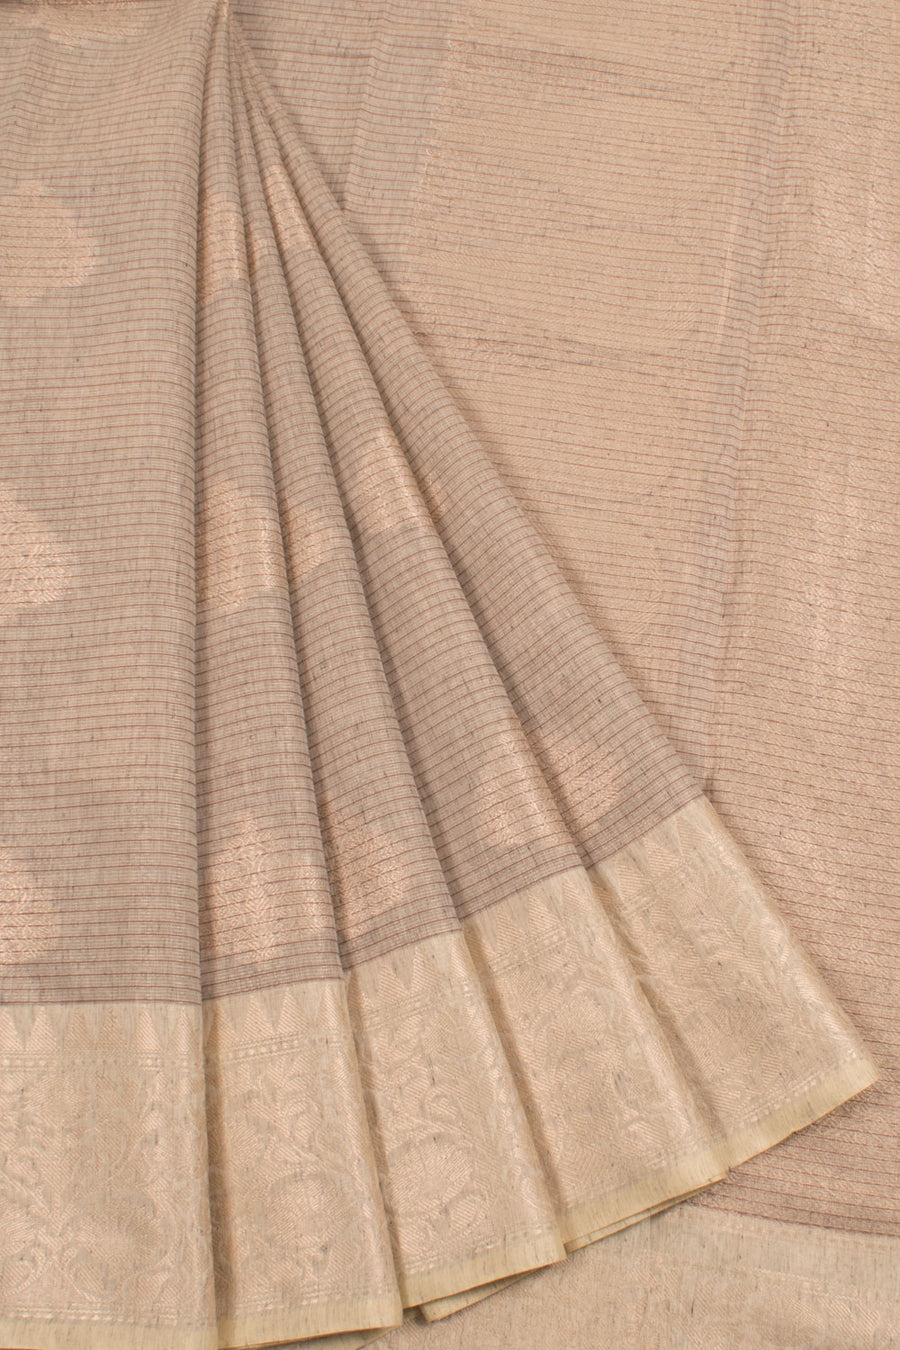 Banarasi Cotton Saree with Stripes Design, Floral Motifs and Brocade Blouse